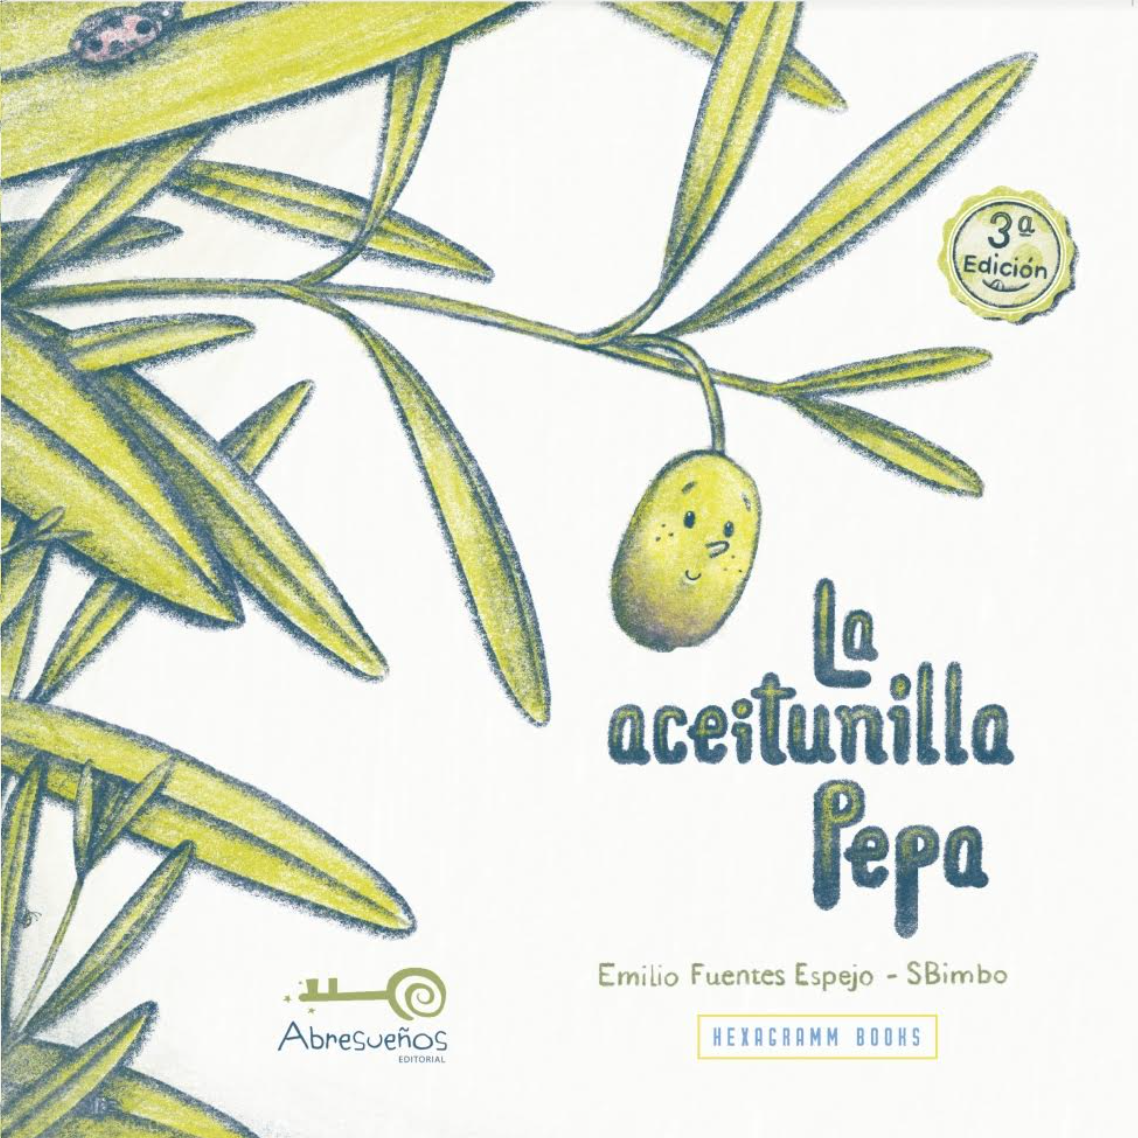 La aceitunilla Pepa (paperback)